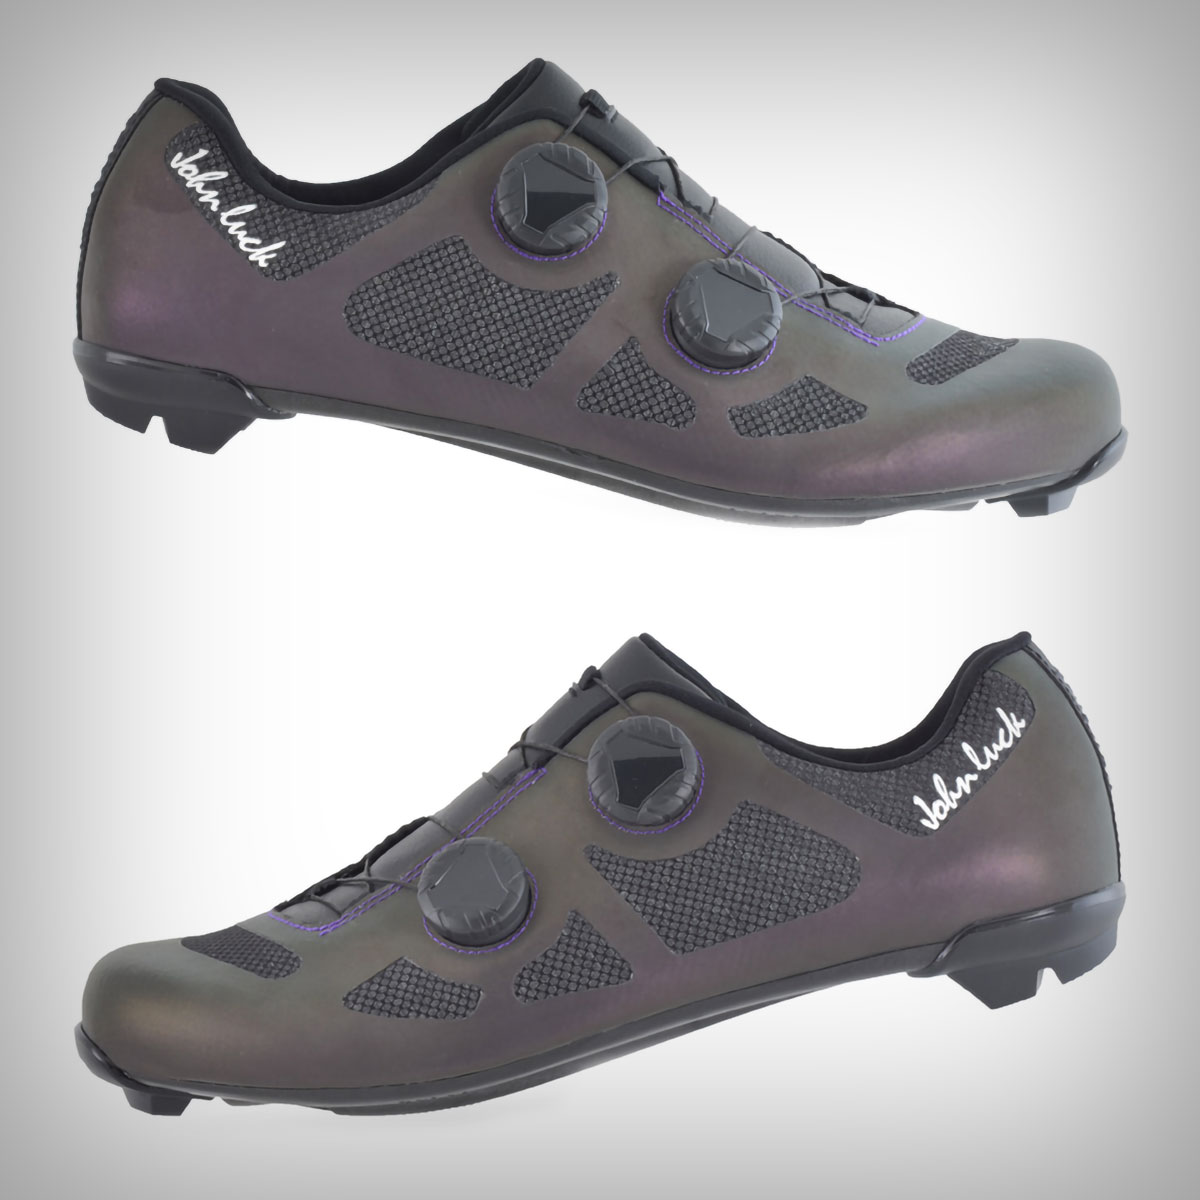 John Luck Invictus, unas zapatillas de carretera con capa reflectante para mejorar la seguridad en condiciones de poca luz